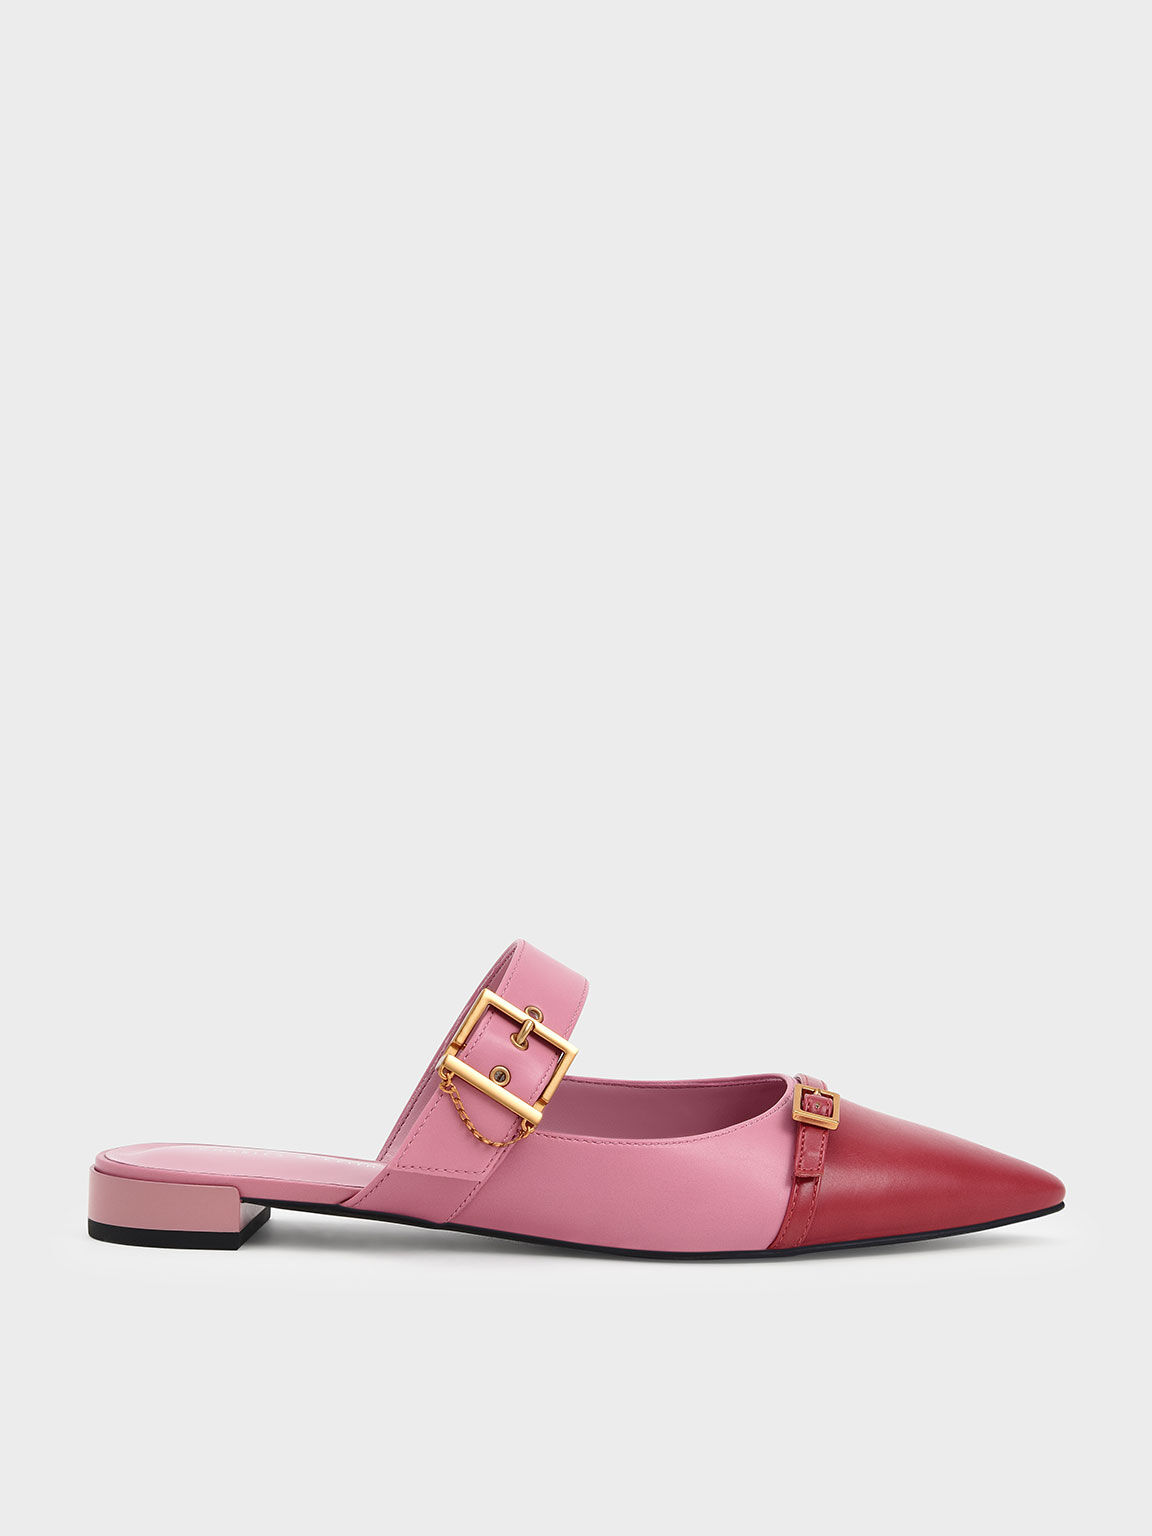 Hadley 金屬釦帶平底鞋, 粉紅色, hi-res